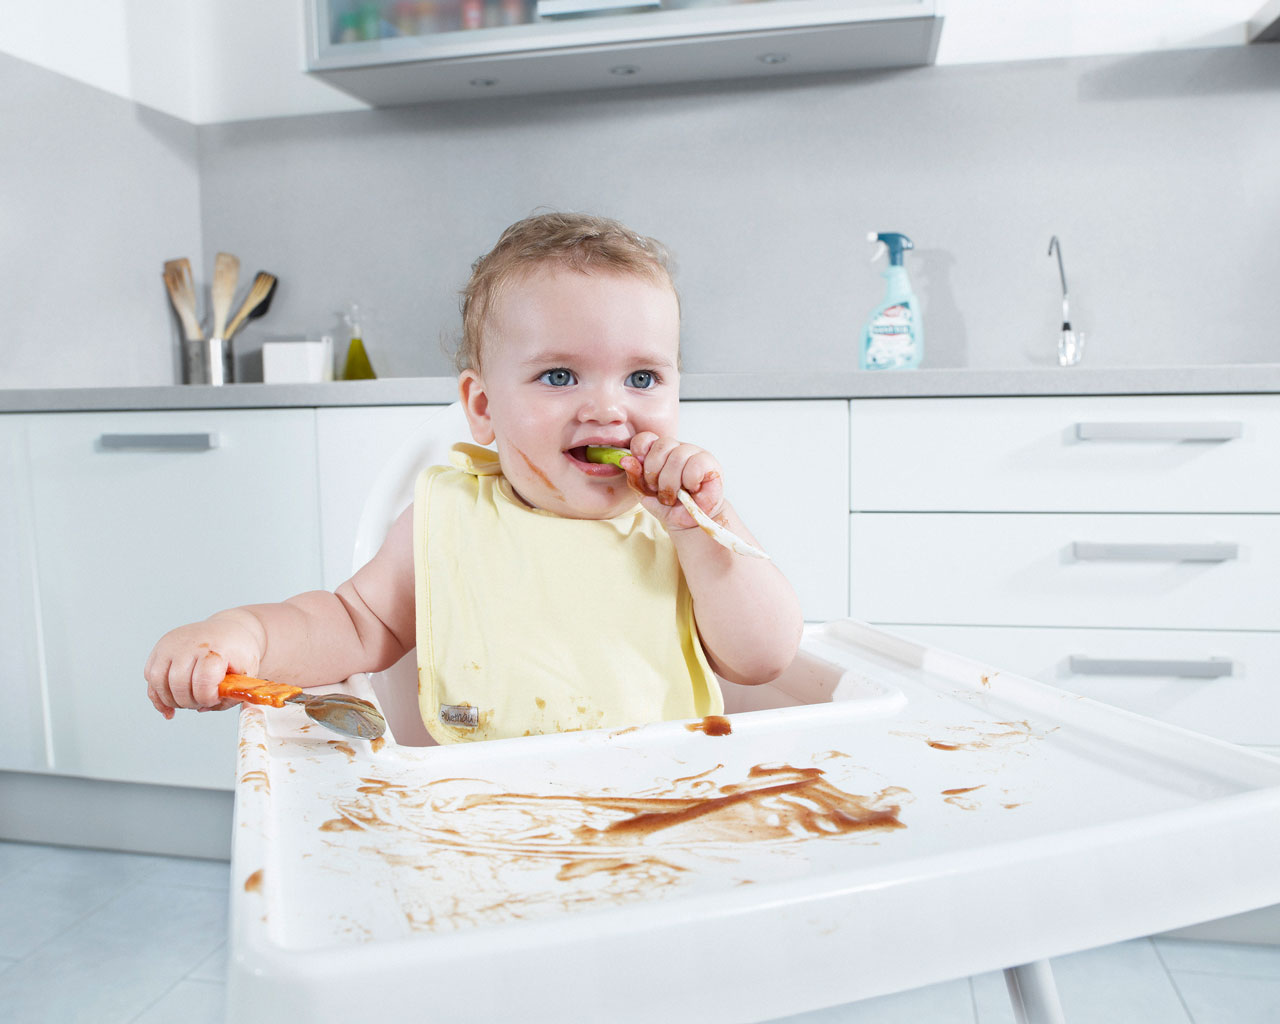 Bébé dans la cuisine : les astuces sécurité !